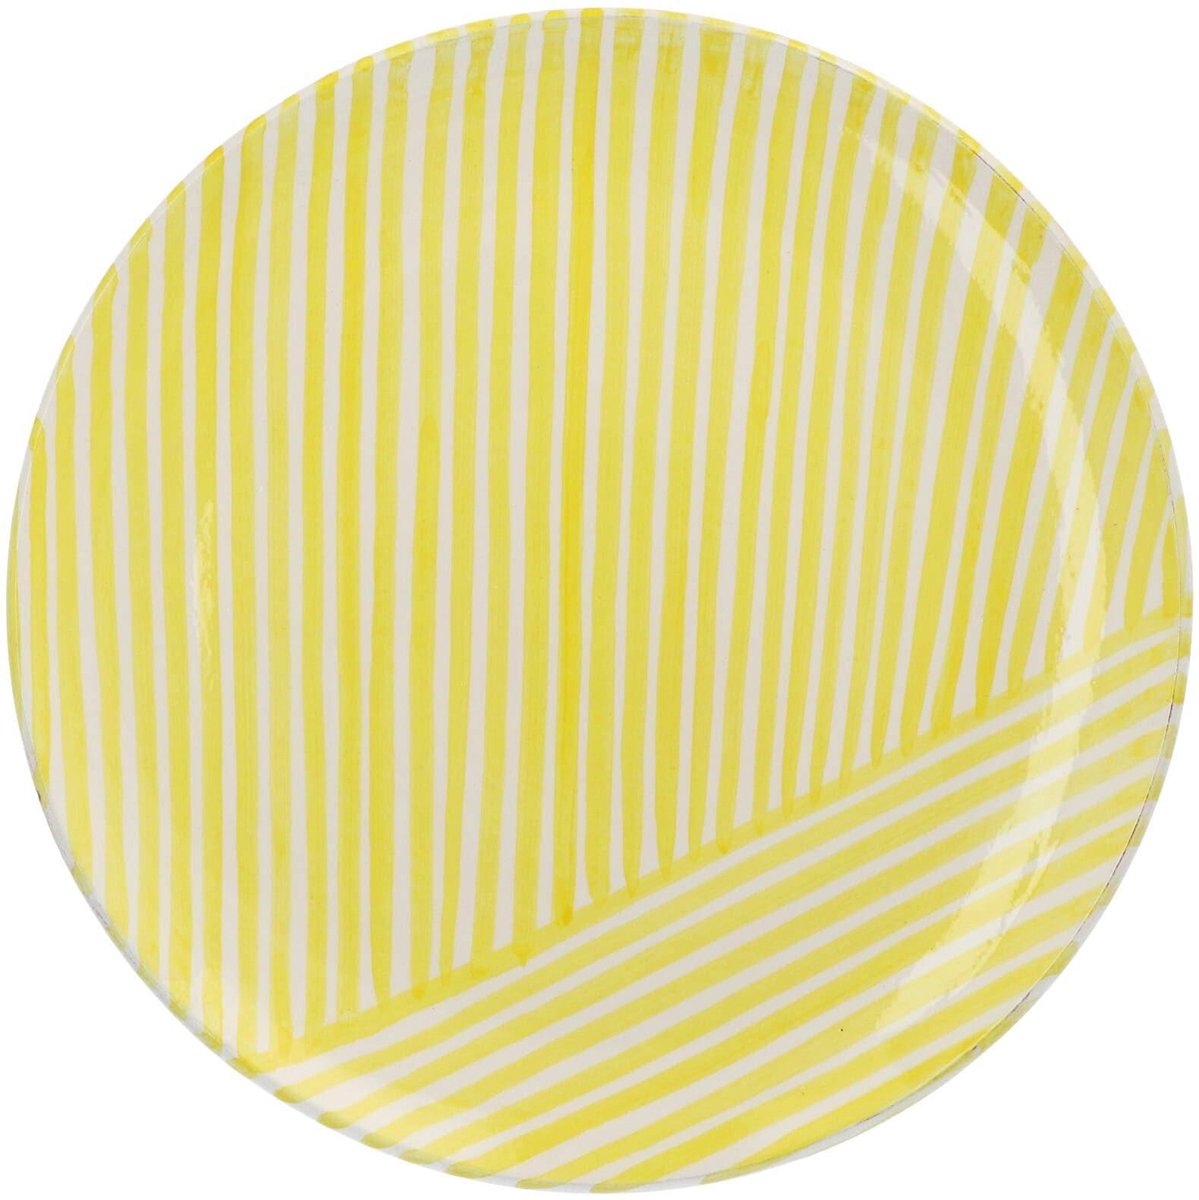 Casa Cubista - Ontbijtbord met criss-cross patroon citroengeel 23cm - Kleine borden